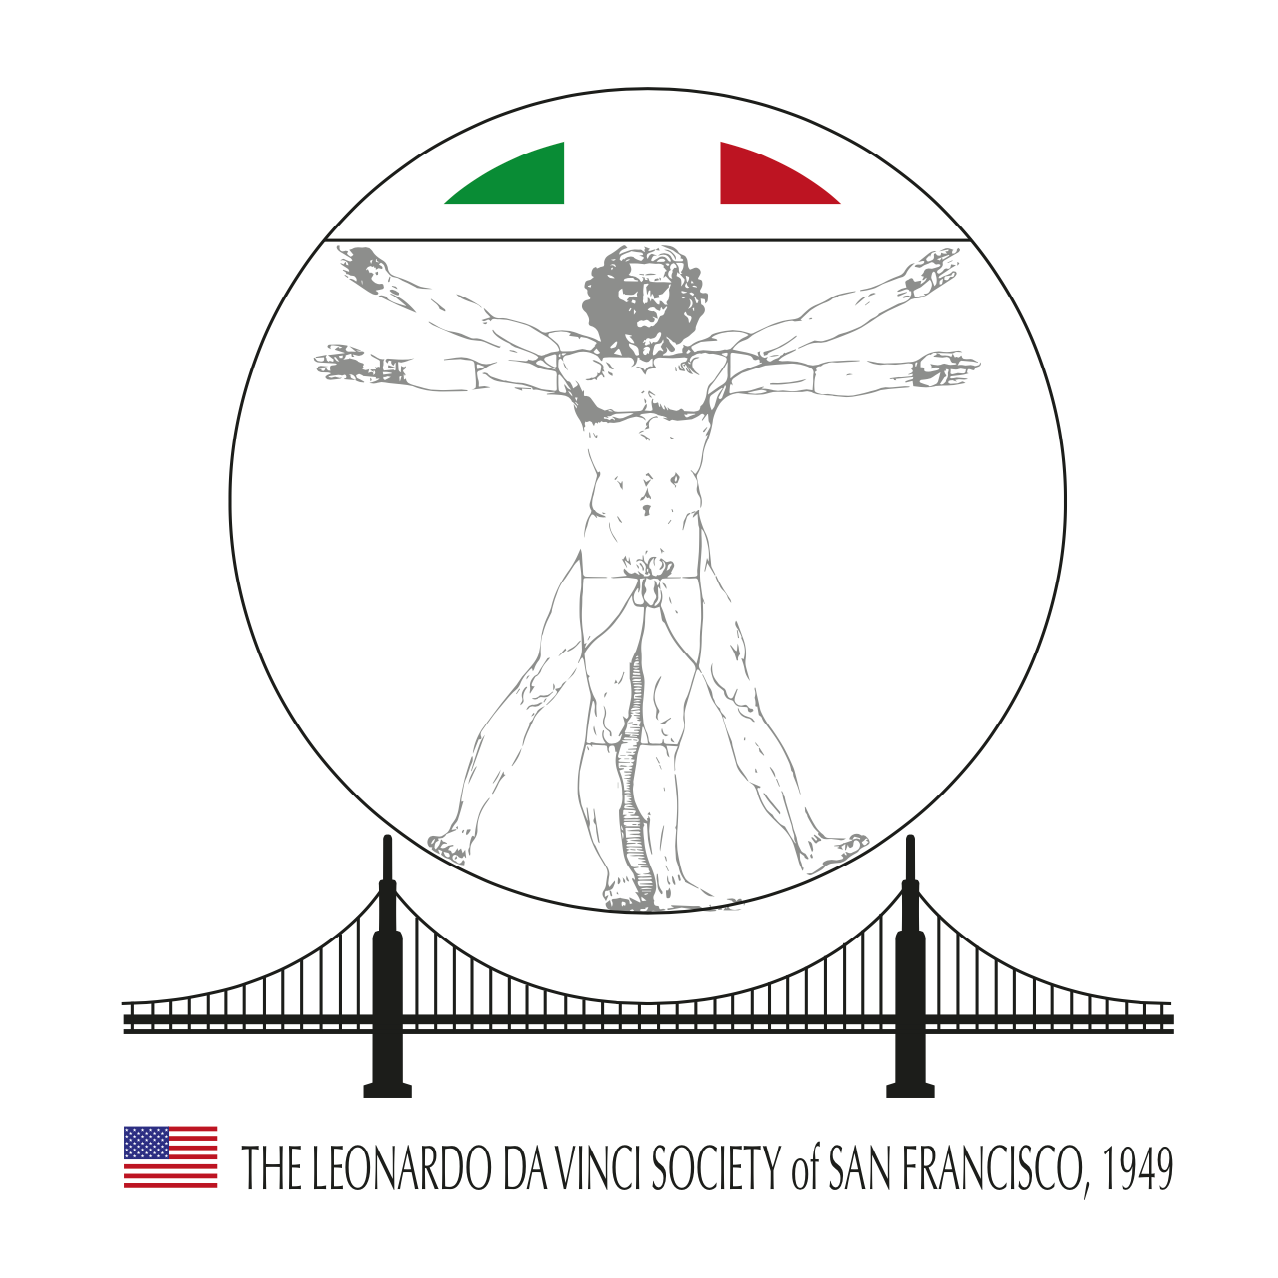 Italian Organization in USA - The Leonardo da Vinci Society